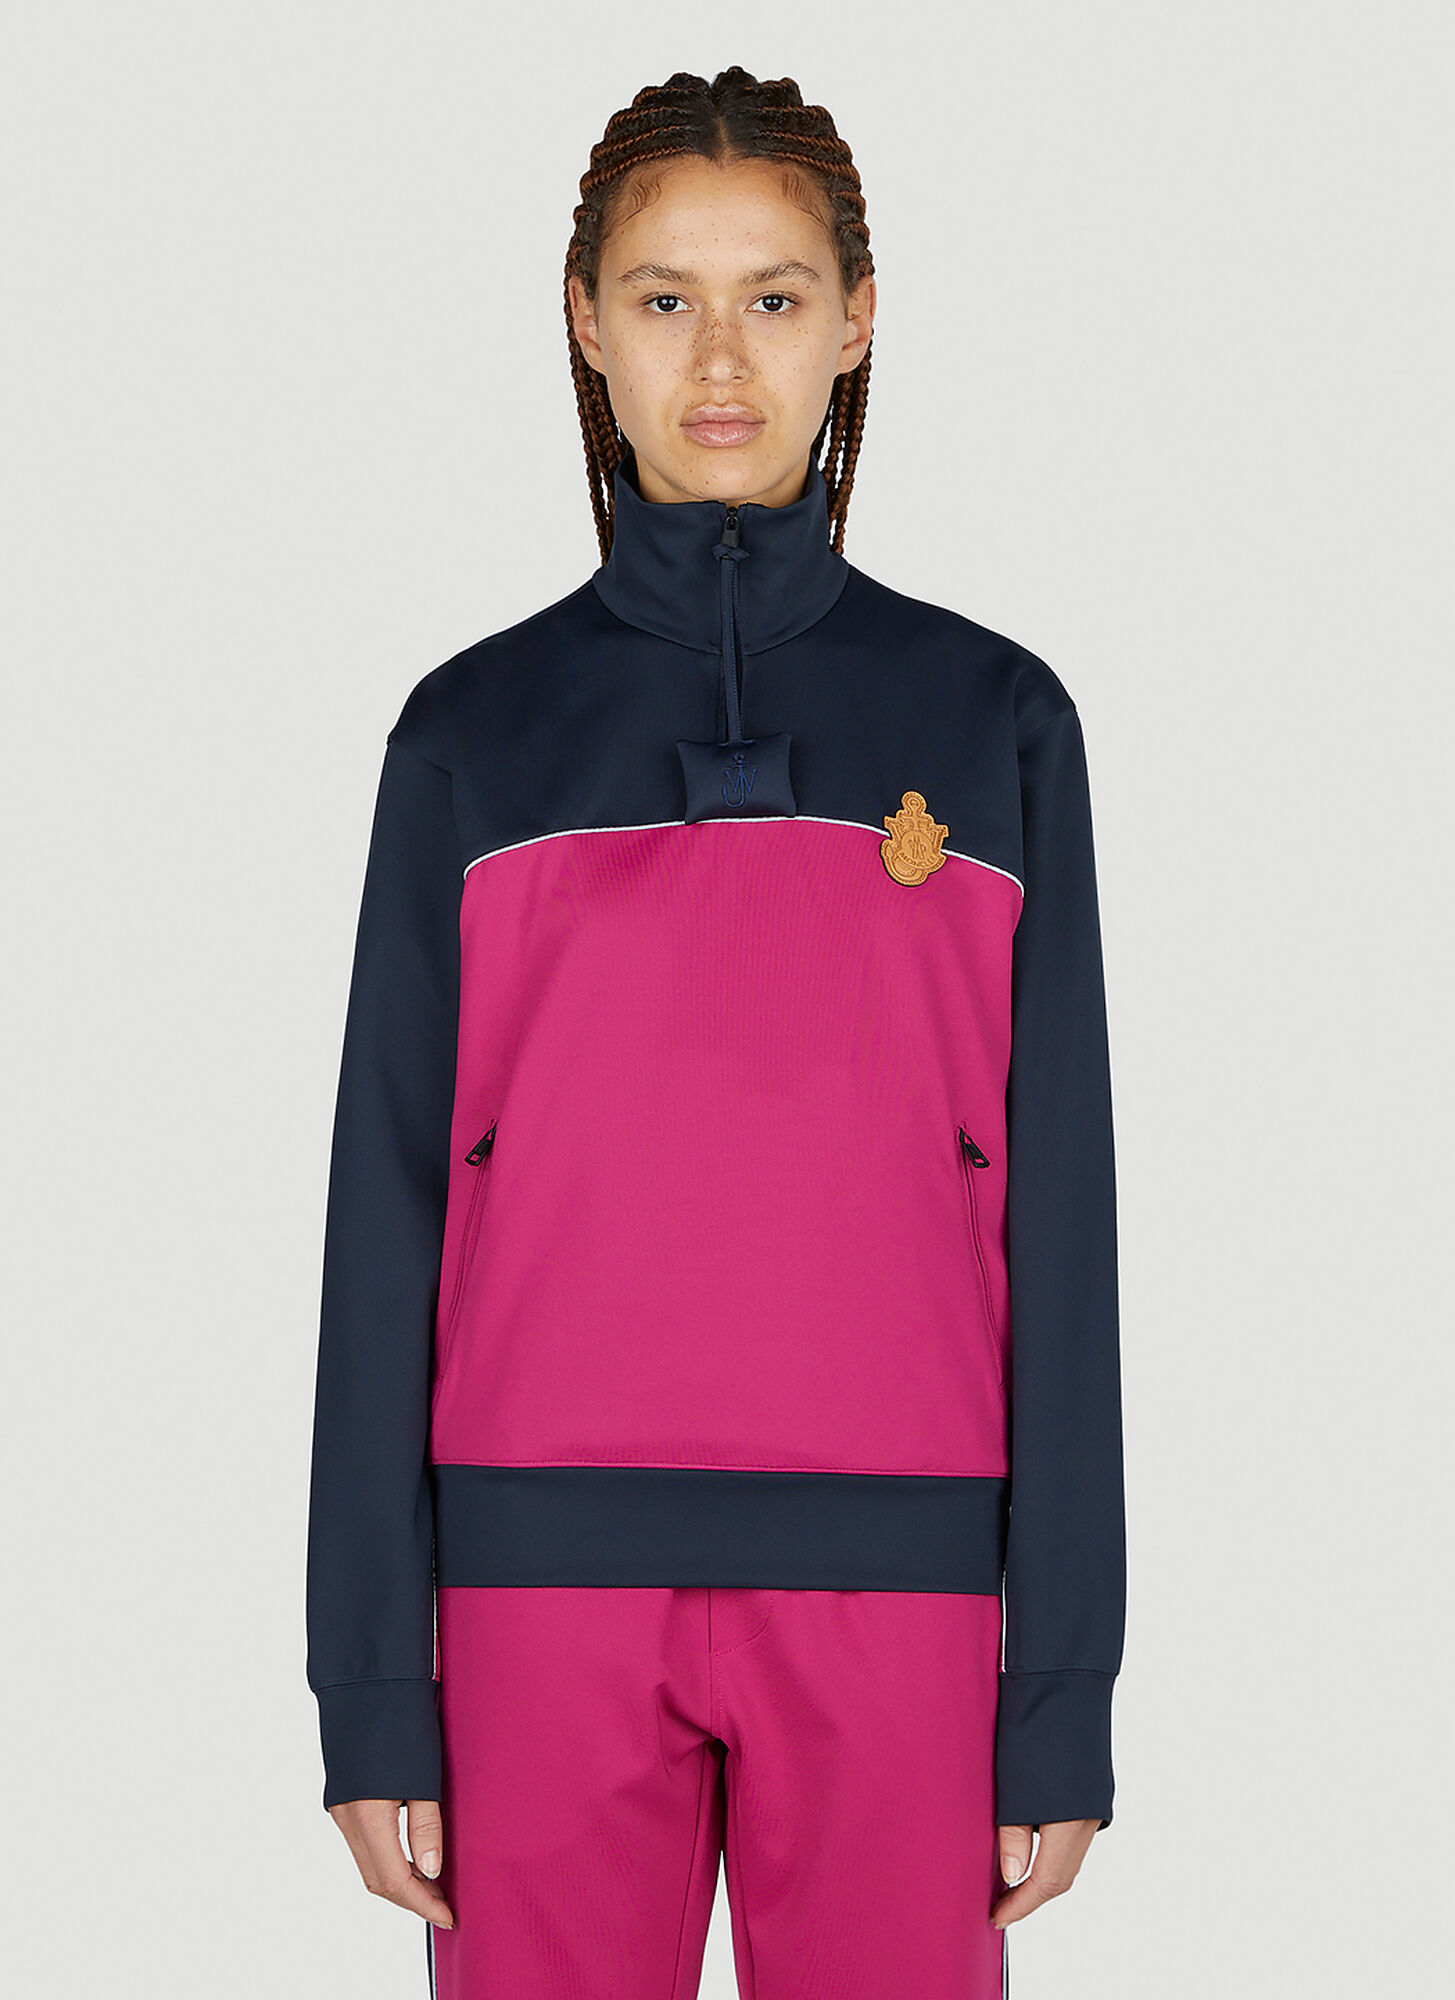 Moncler Genius Colourblock Sweatshirt In Pink